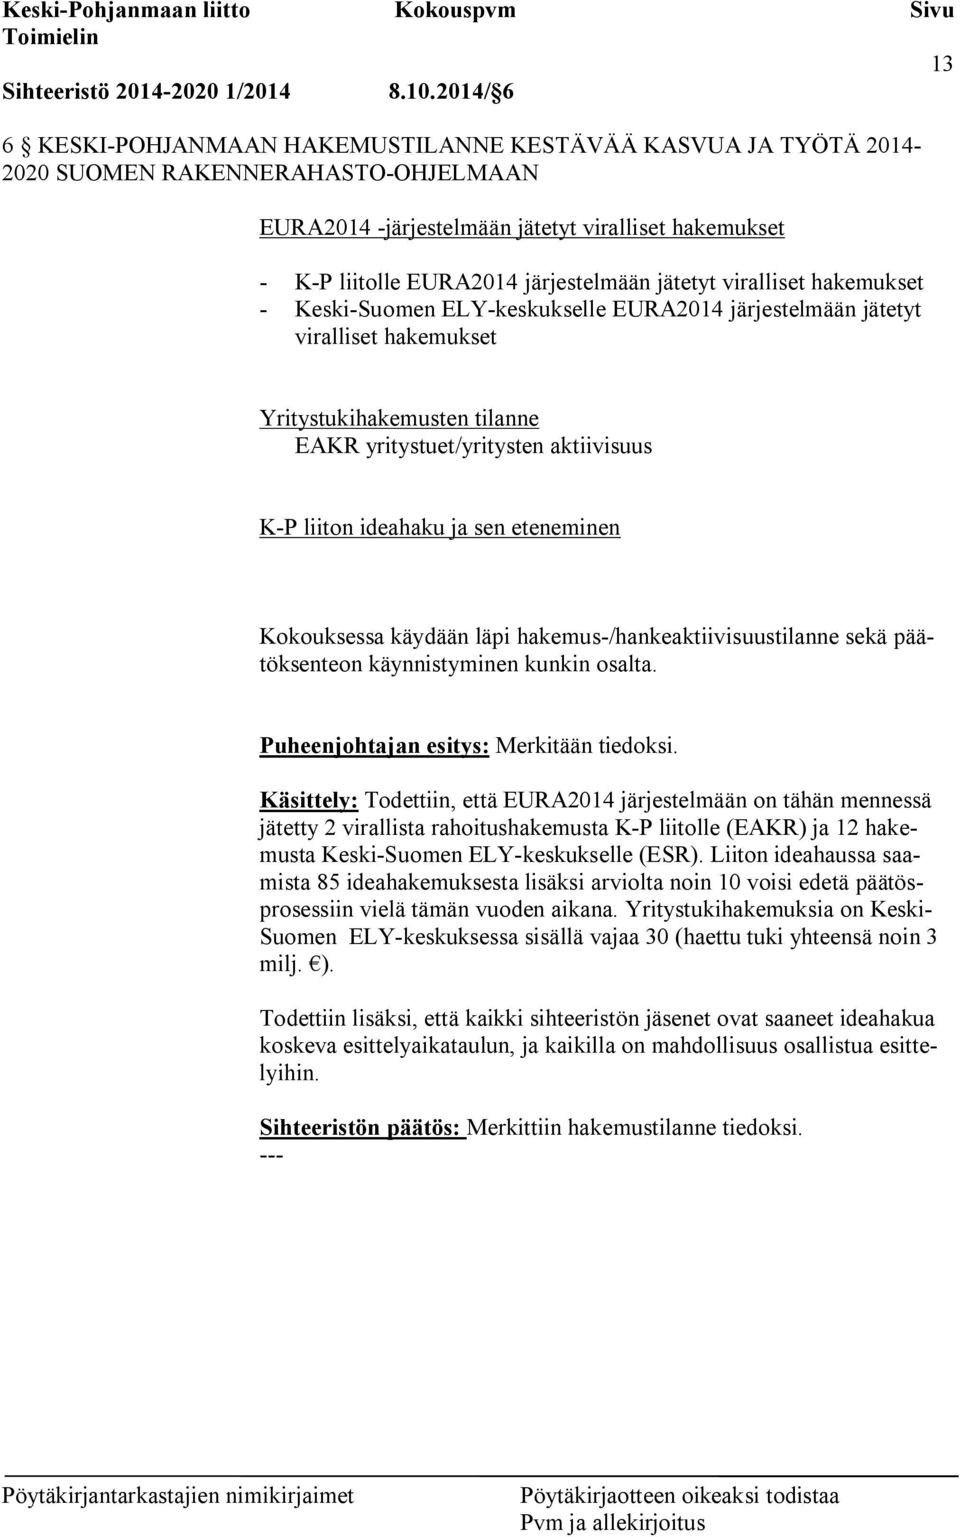 järjestelmään jätetyt viralliset hakemukset - Keski-Suomen ELY-keskukselle EURA2014 järjestelmään jätetyt viralliset hakemukset Yritystukihakemusten tilanne EAKR yritystuet/yritysten aktiivisuus K-P